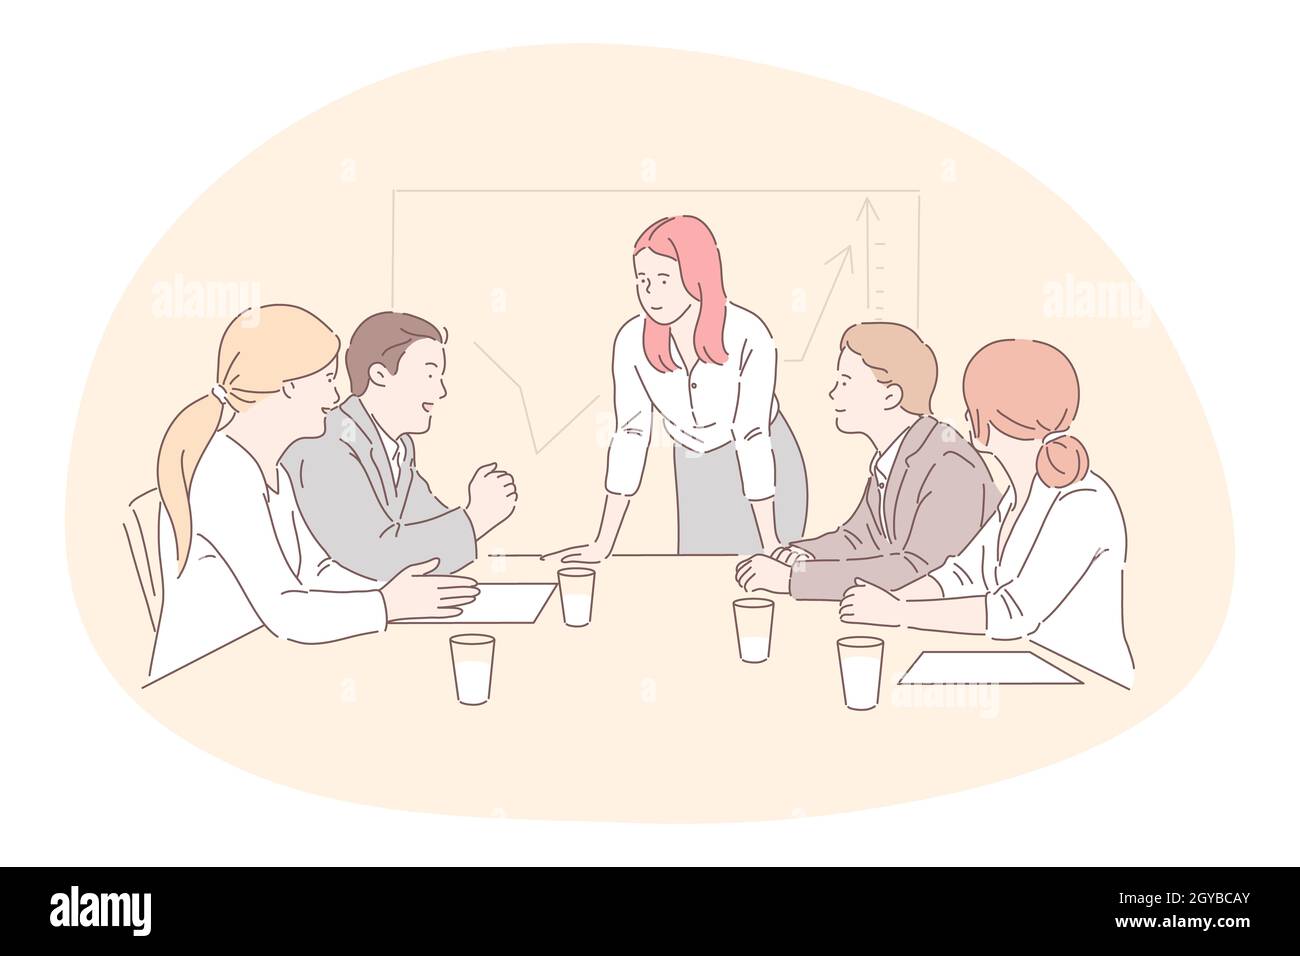 Meeting, lavoro di squadra, analisi, cooperazione, business concept. Team di uomini d'affari donne manager partner colleghi collaborare a discutere progetto in o Foto Stock